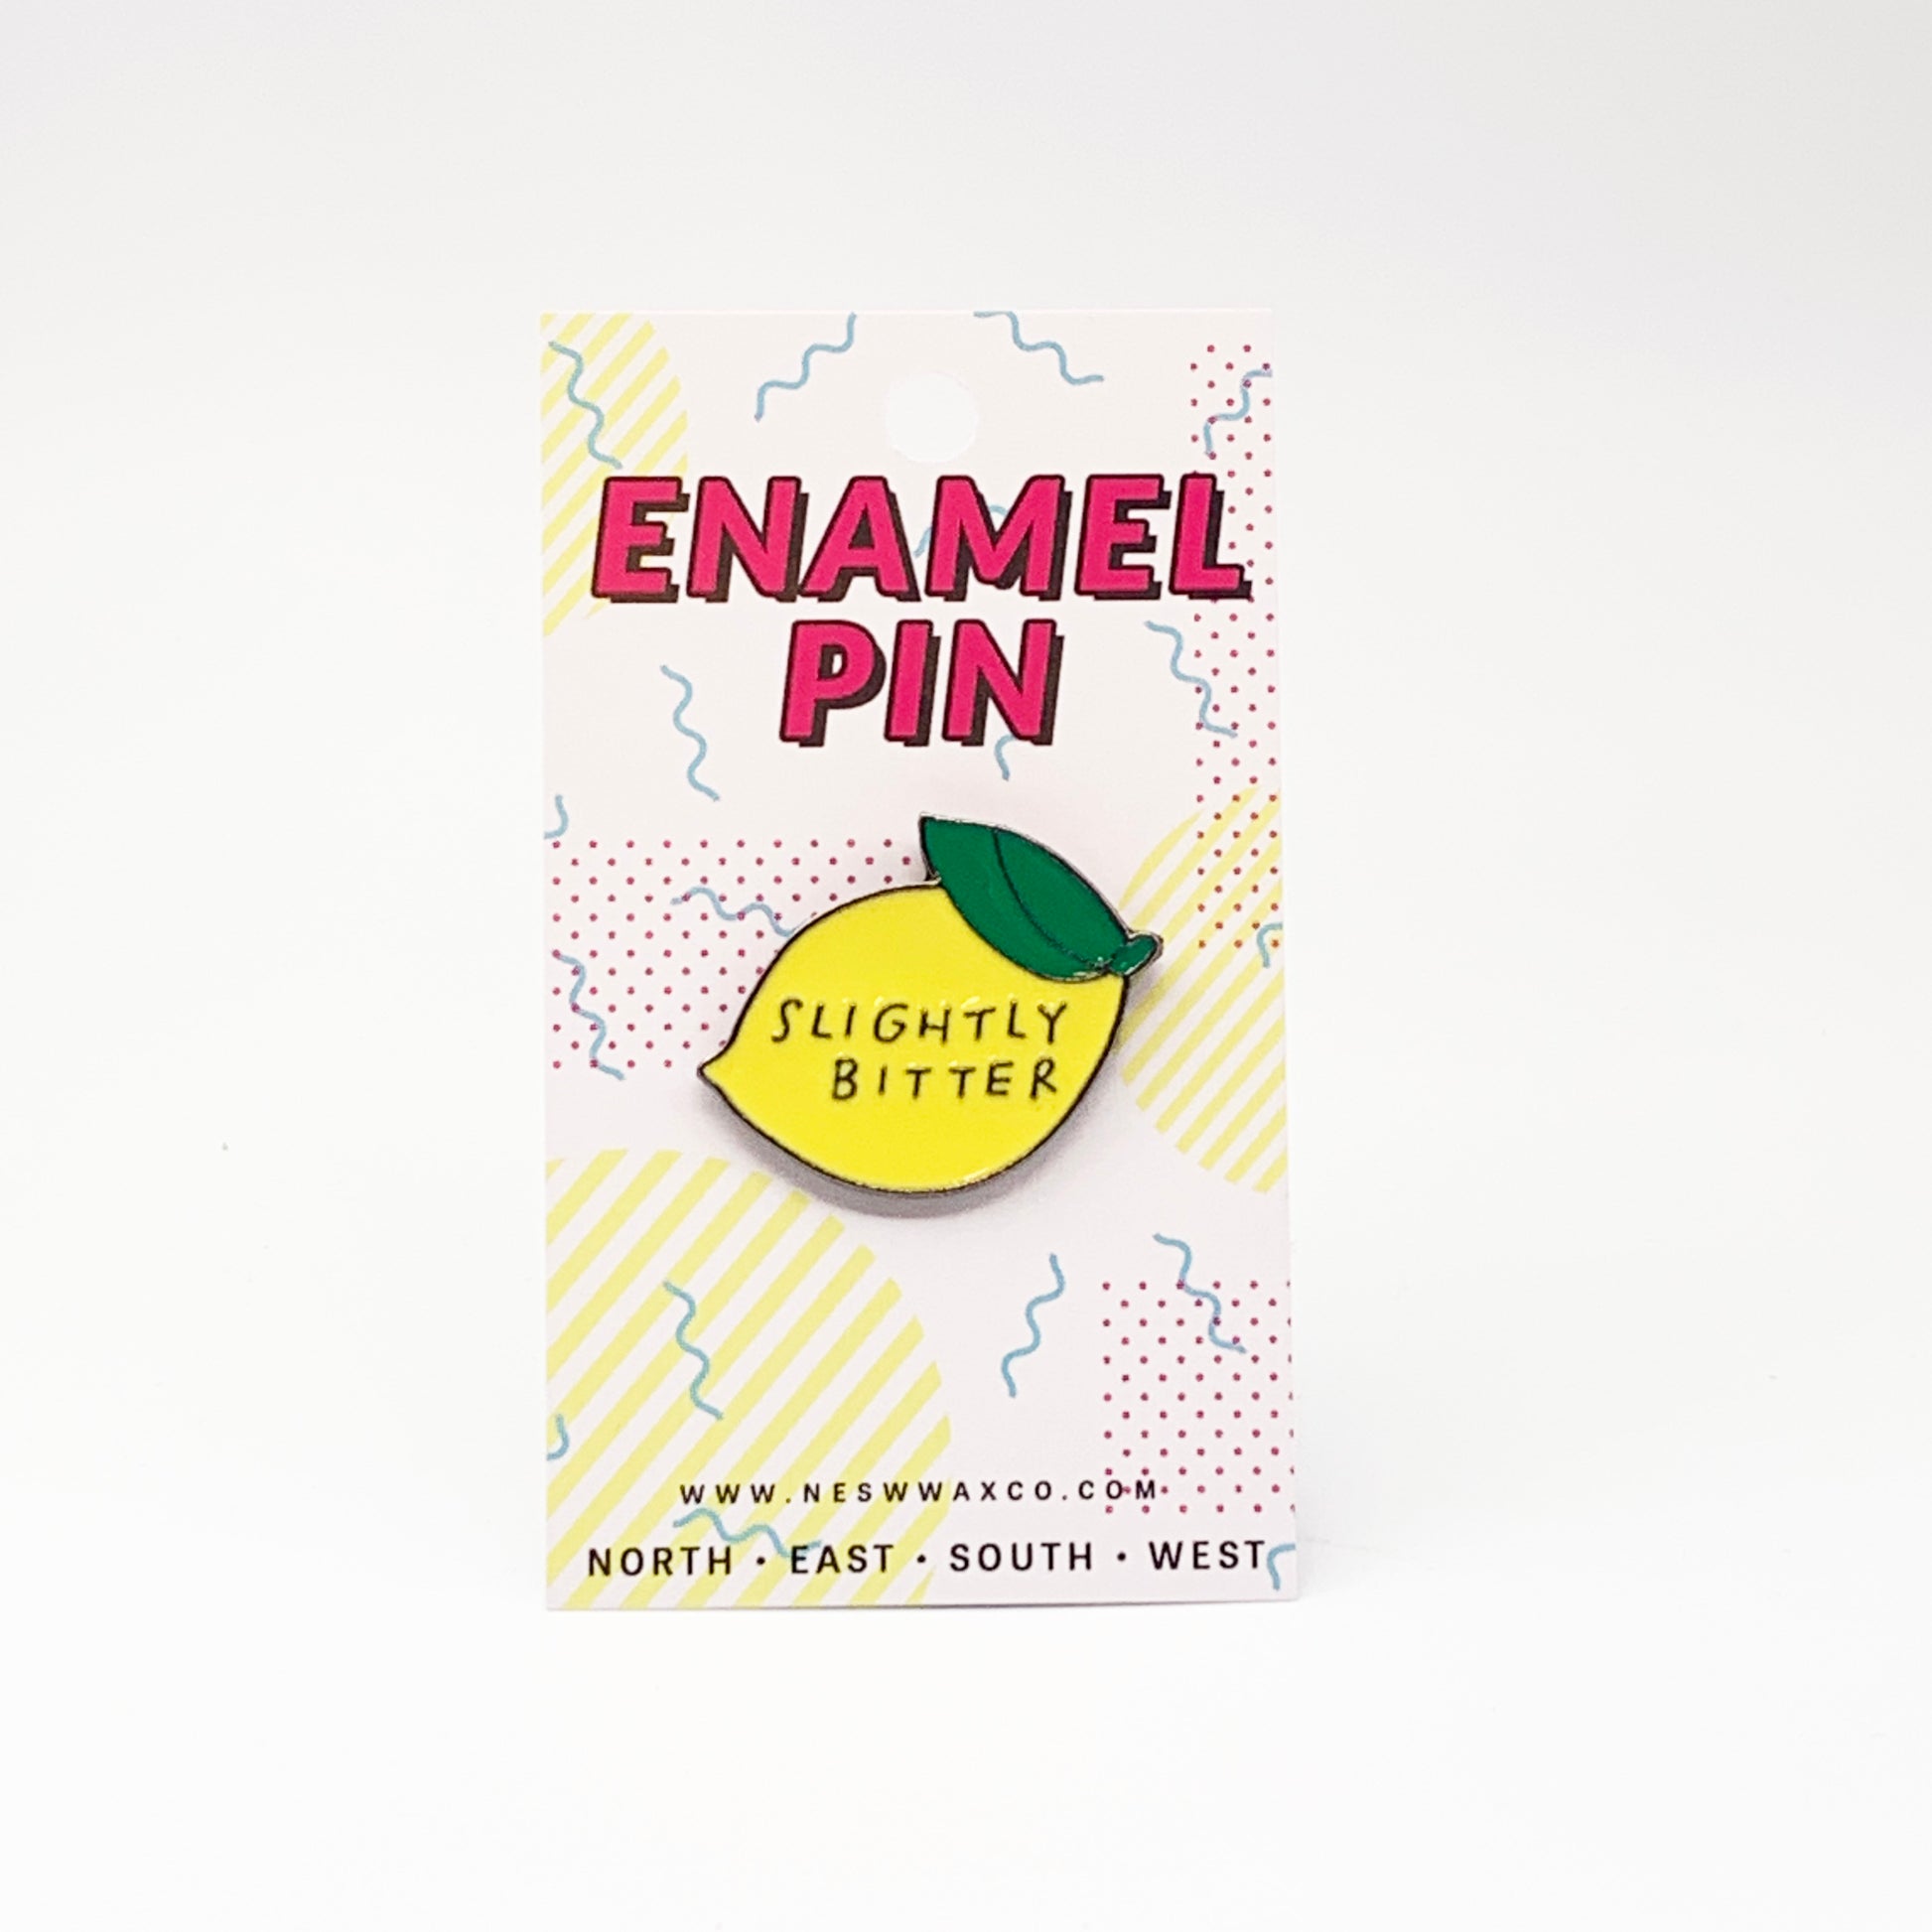 Slightly Bitter Enamel Pin - NESW WAX CO//